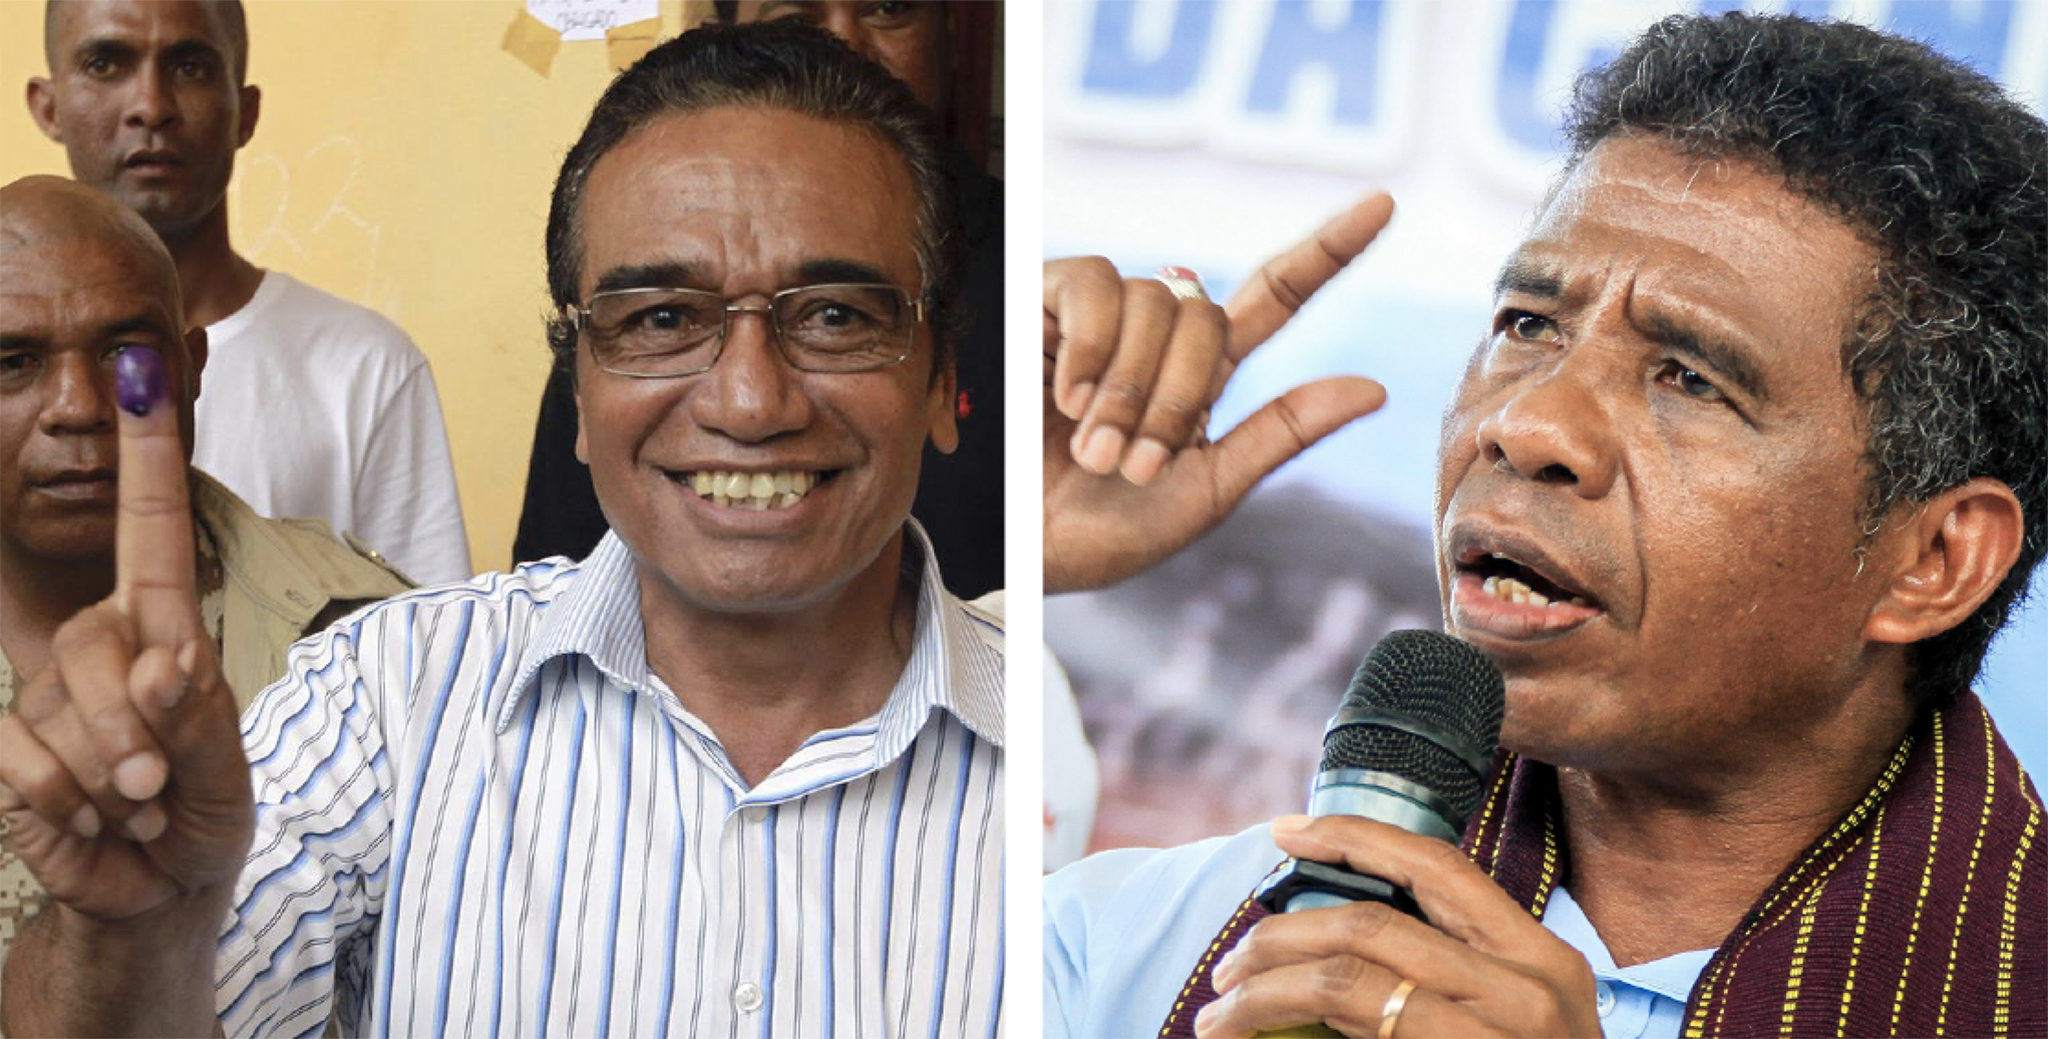 Eleições | Presidência de Timor-Leste entre Guterres Lu-Olo e António da Conceição